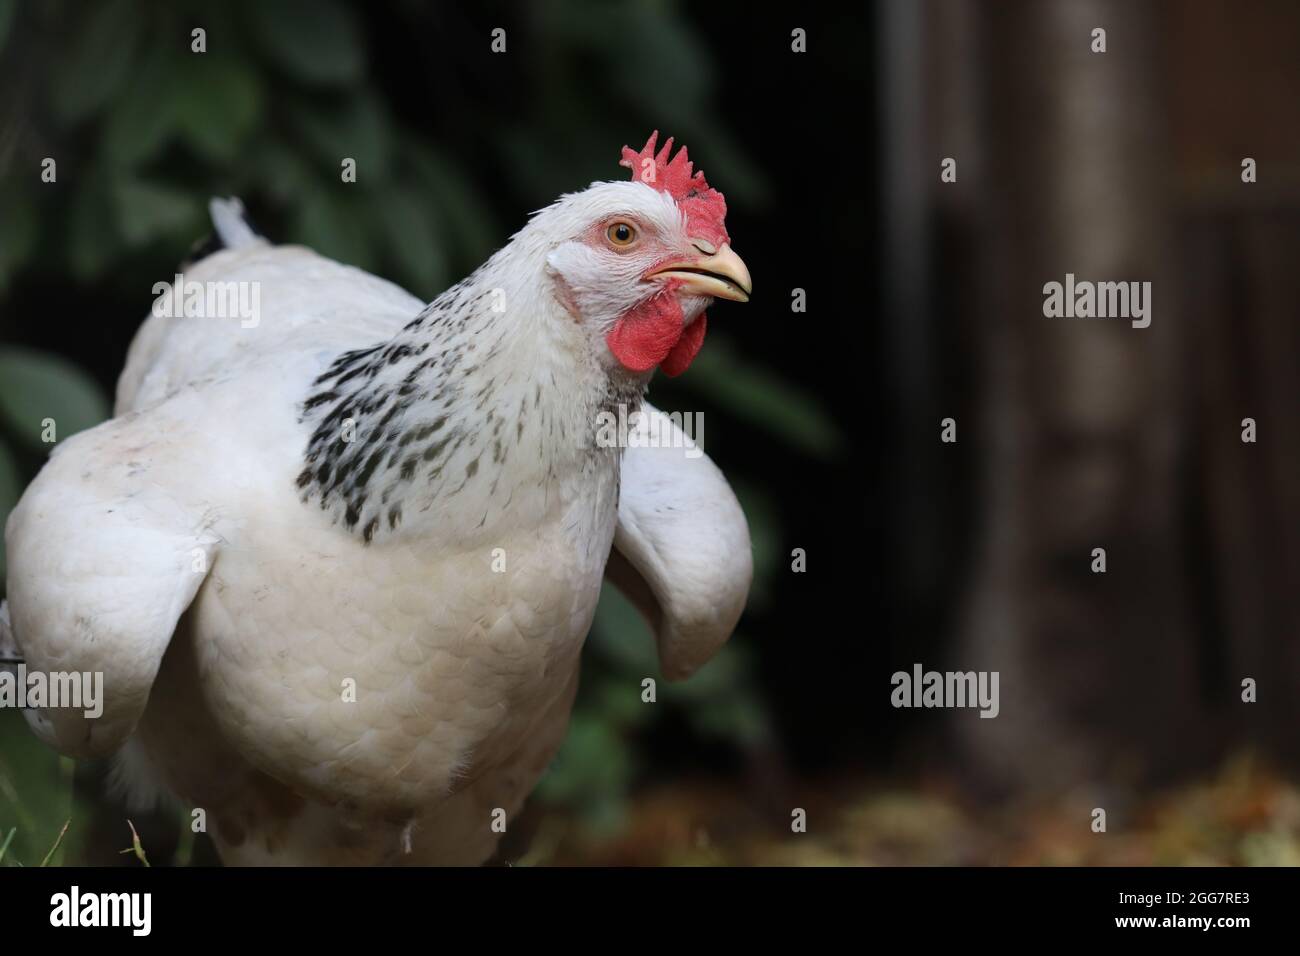 Gallina divertente immagini e fotografie stock ad alta risoluzione - Alamy